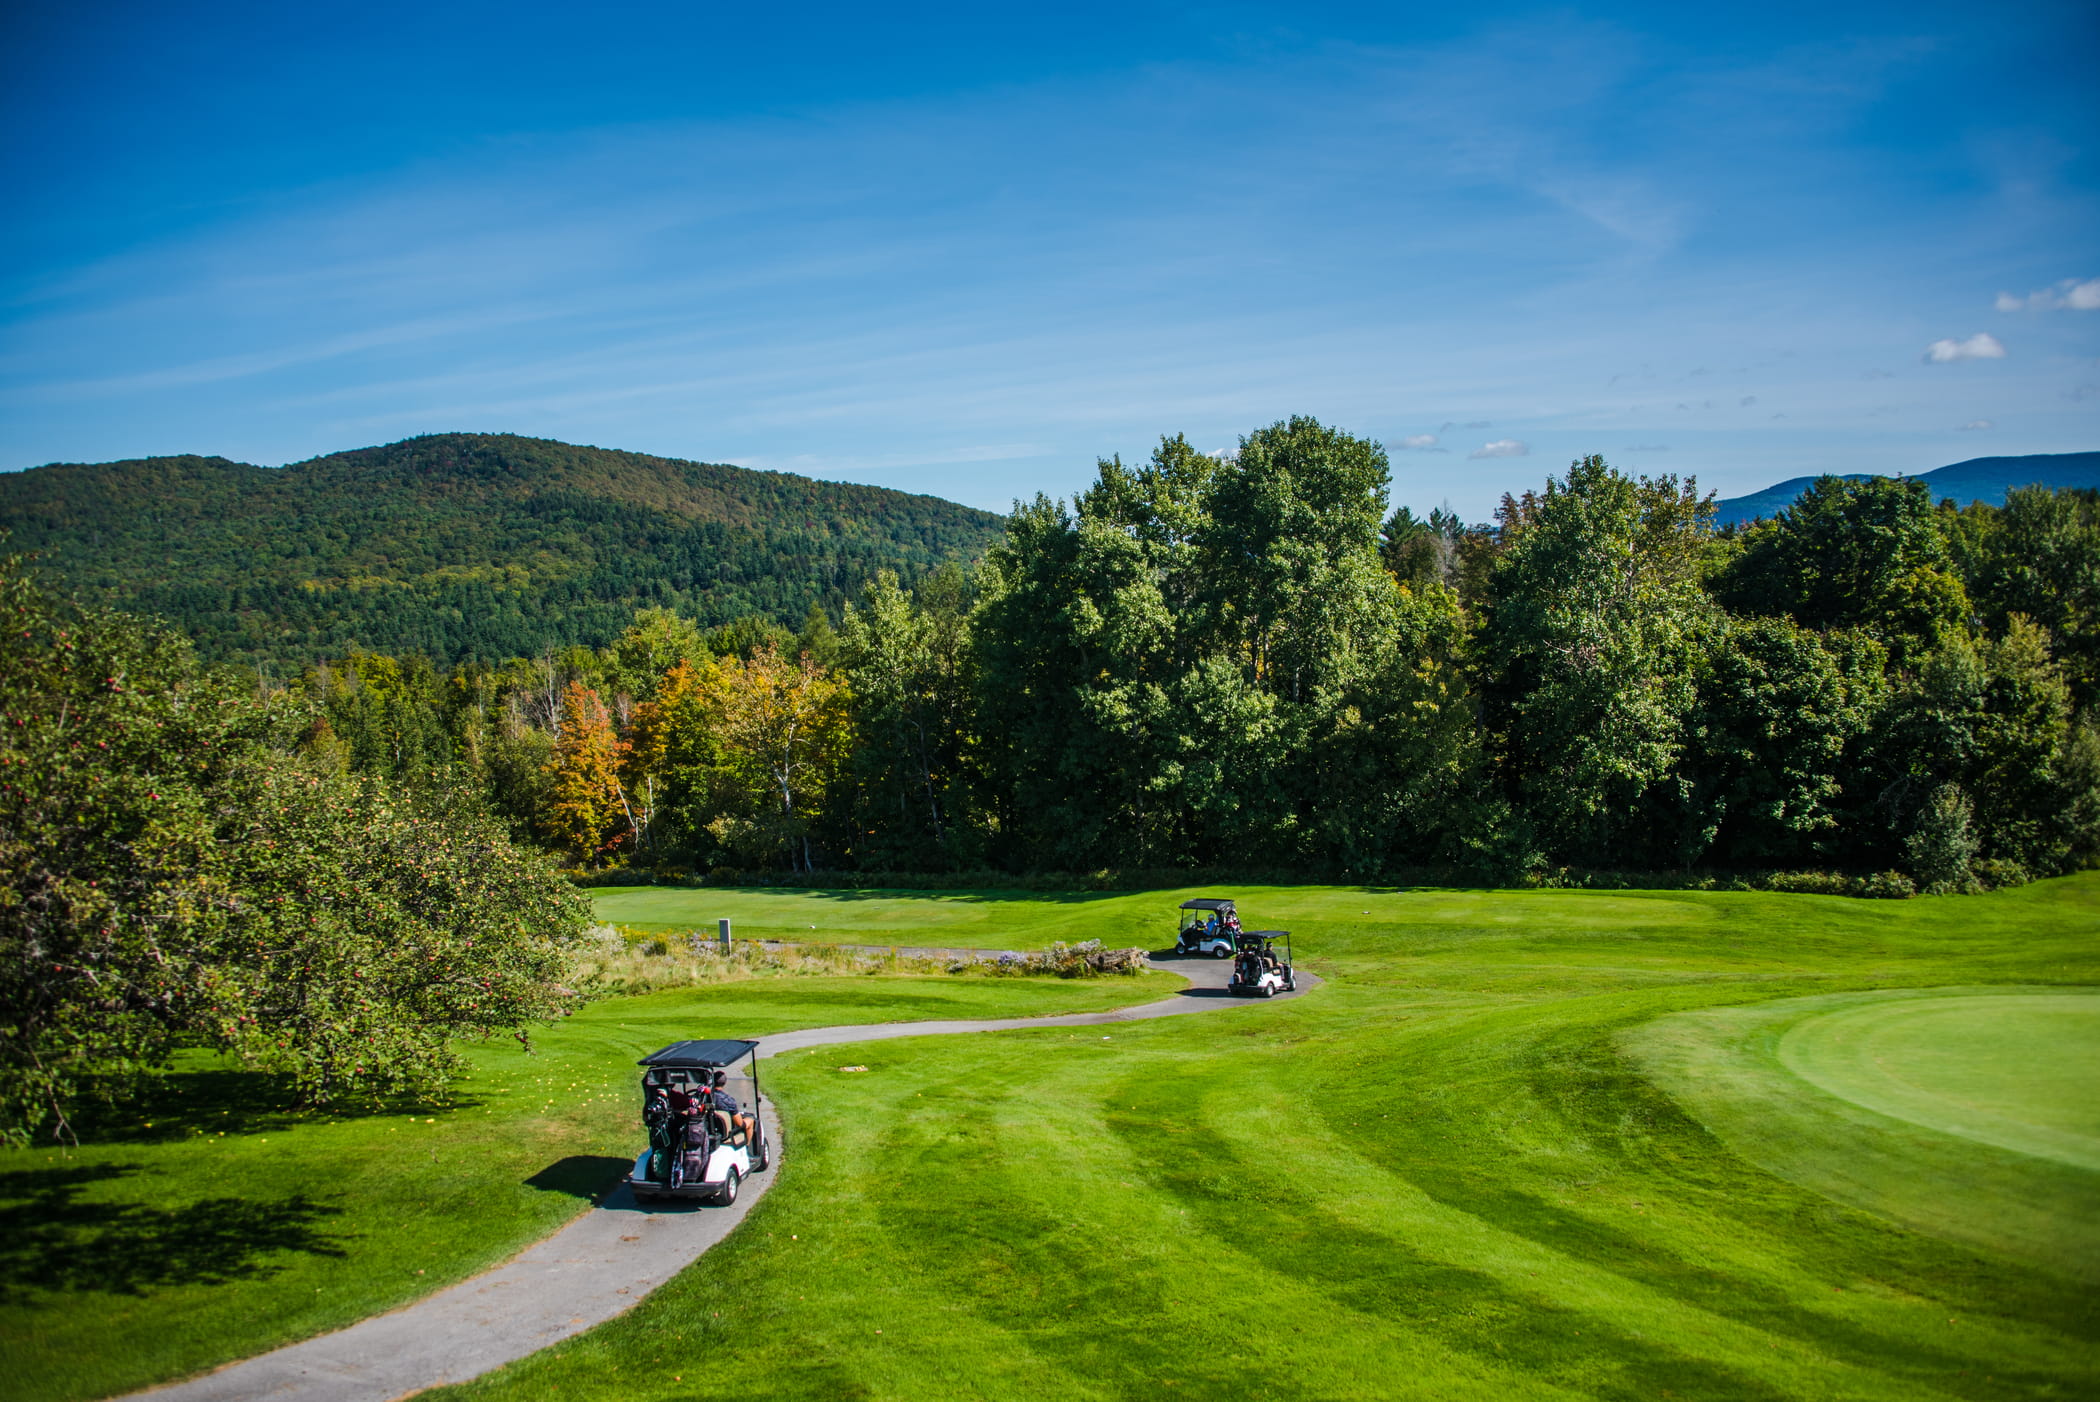 Golf Cart View at Sugarbush